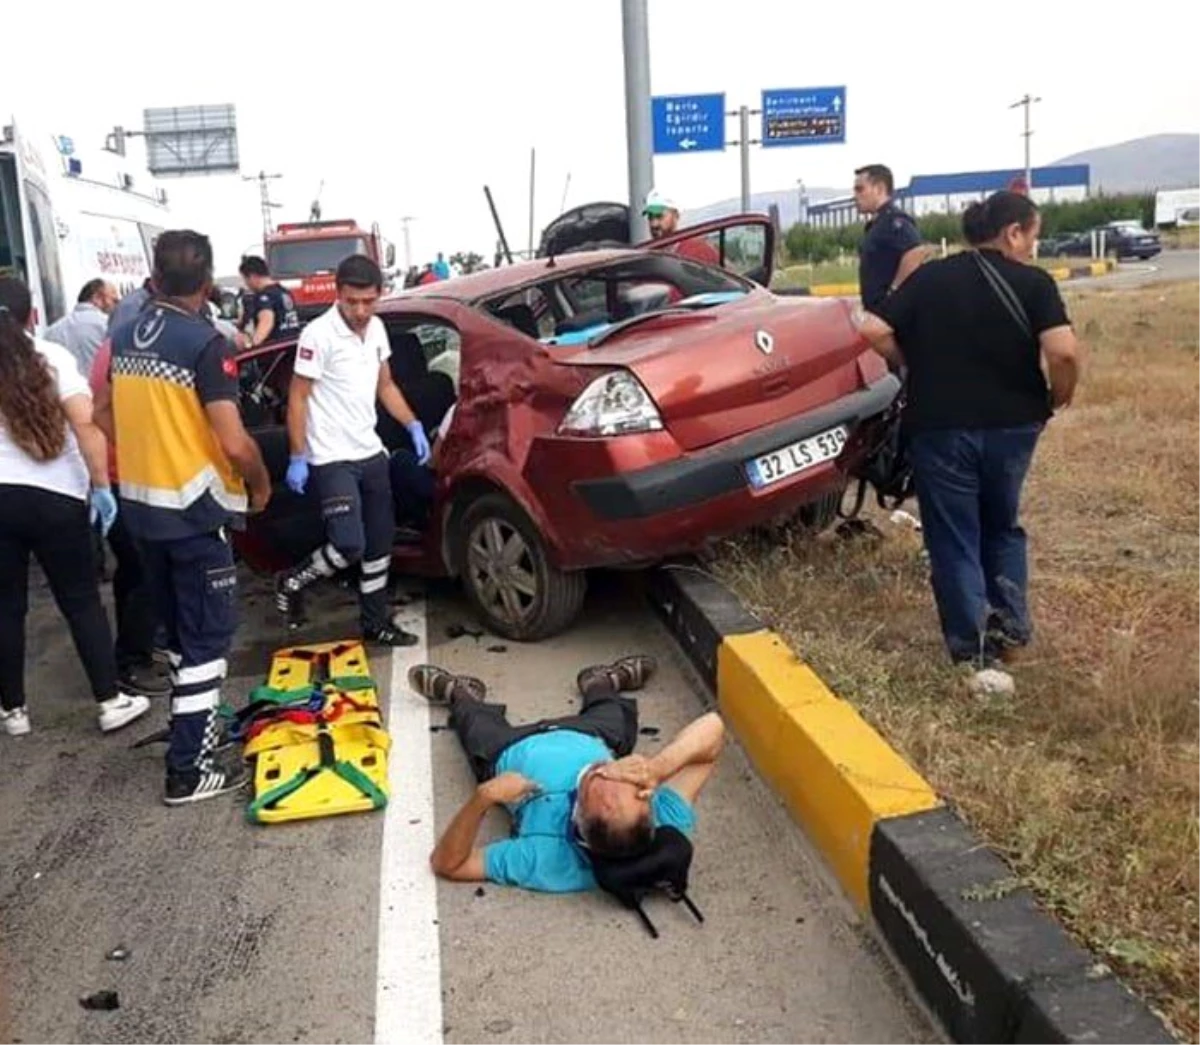 Otomobille cipin çarpıştığı kazada araçlar hurdaya döndü: 8 yaralı